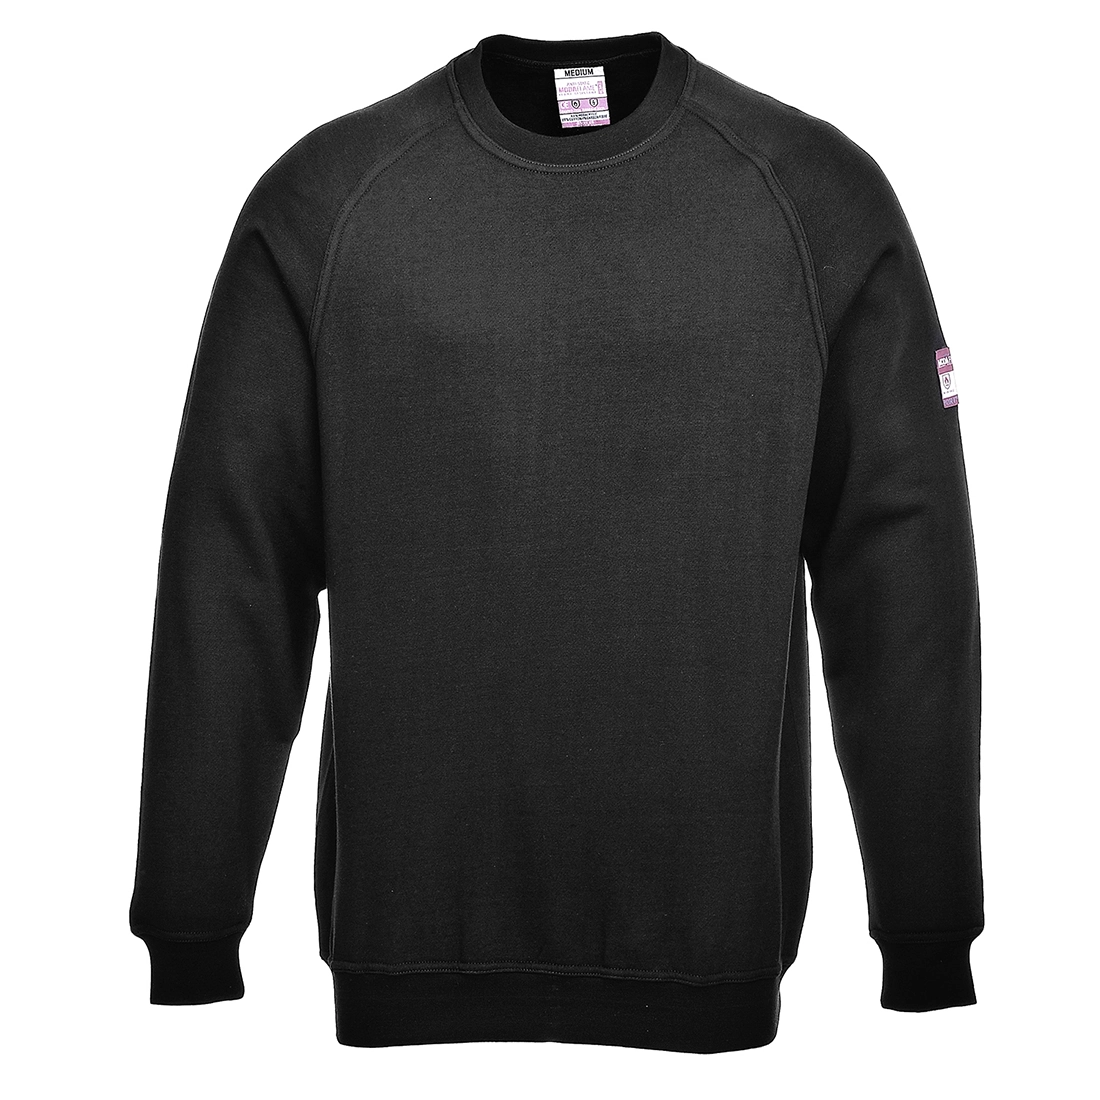 Flame Resistant Anti-Static Long Sleeve Sweatshirt